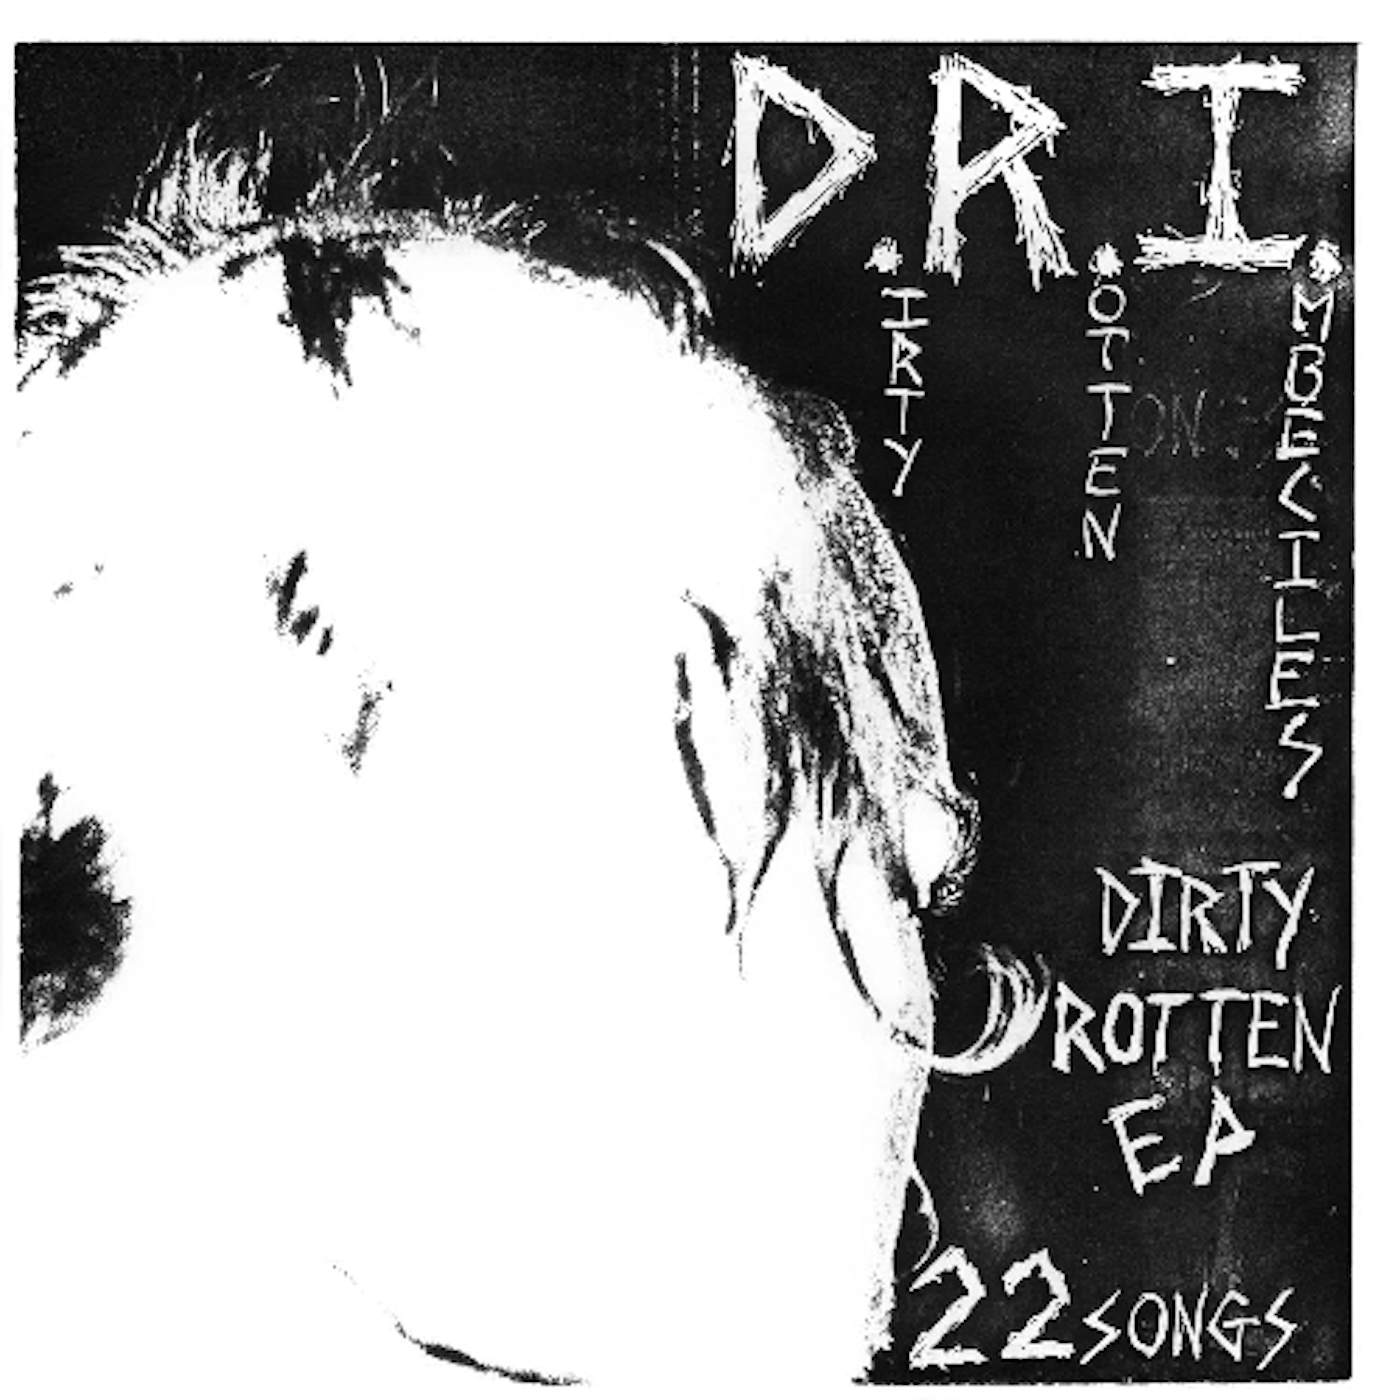 D.R.I. DIRTY ROTTEN Vinyl Record